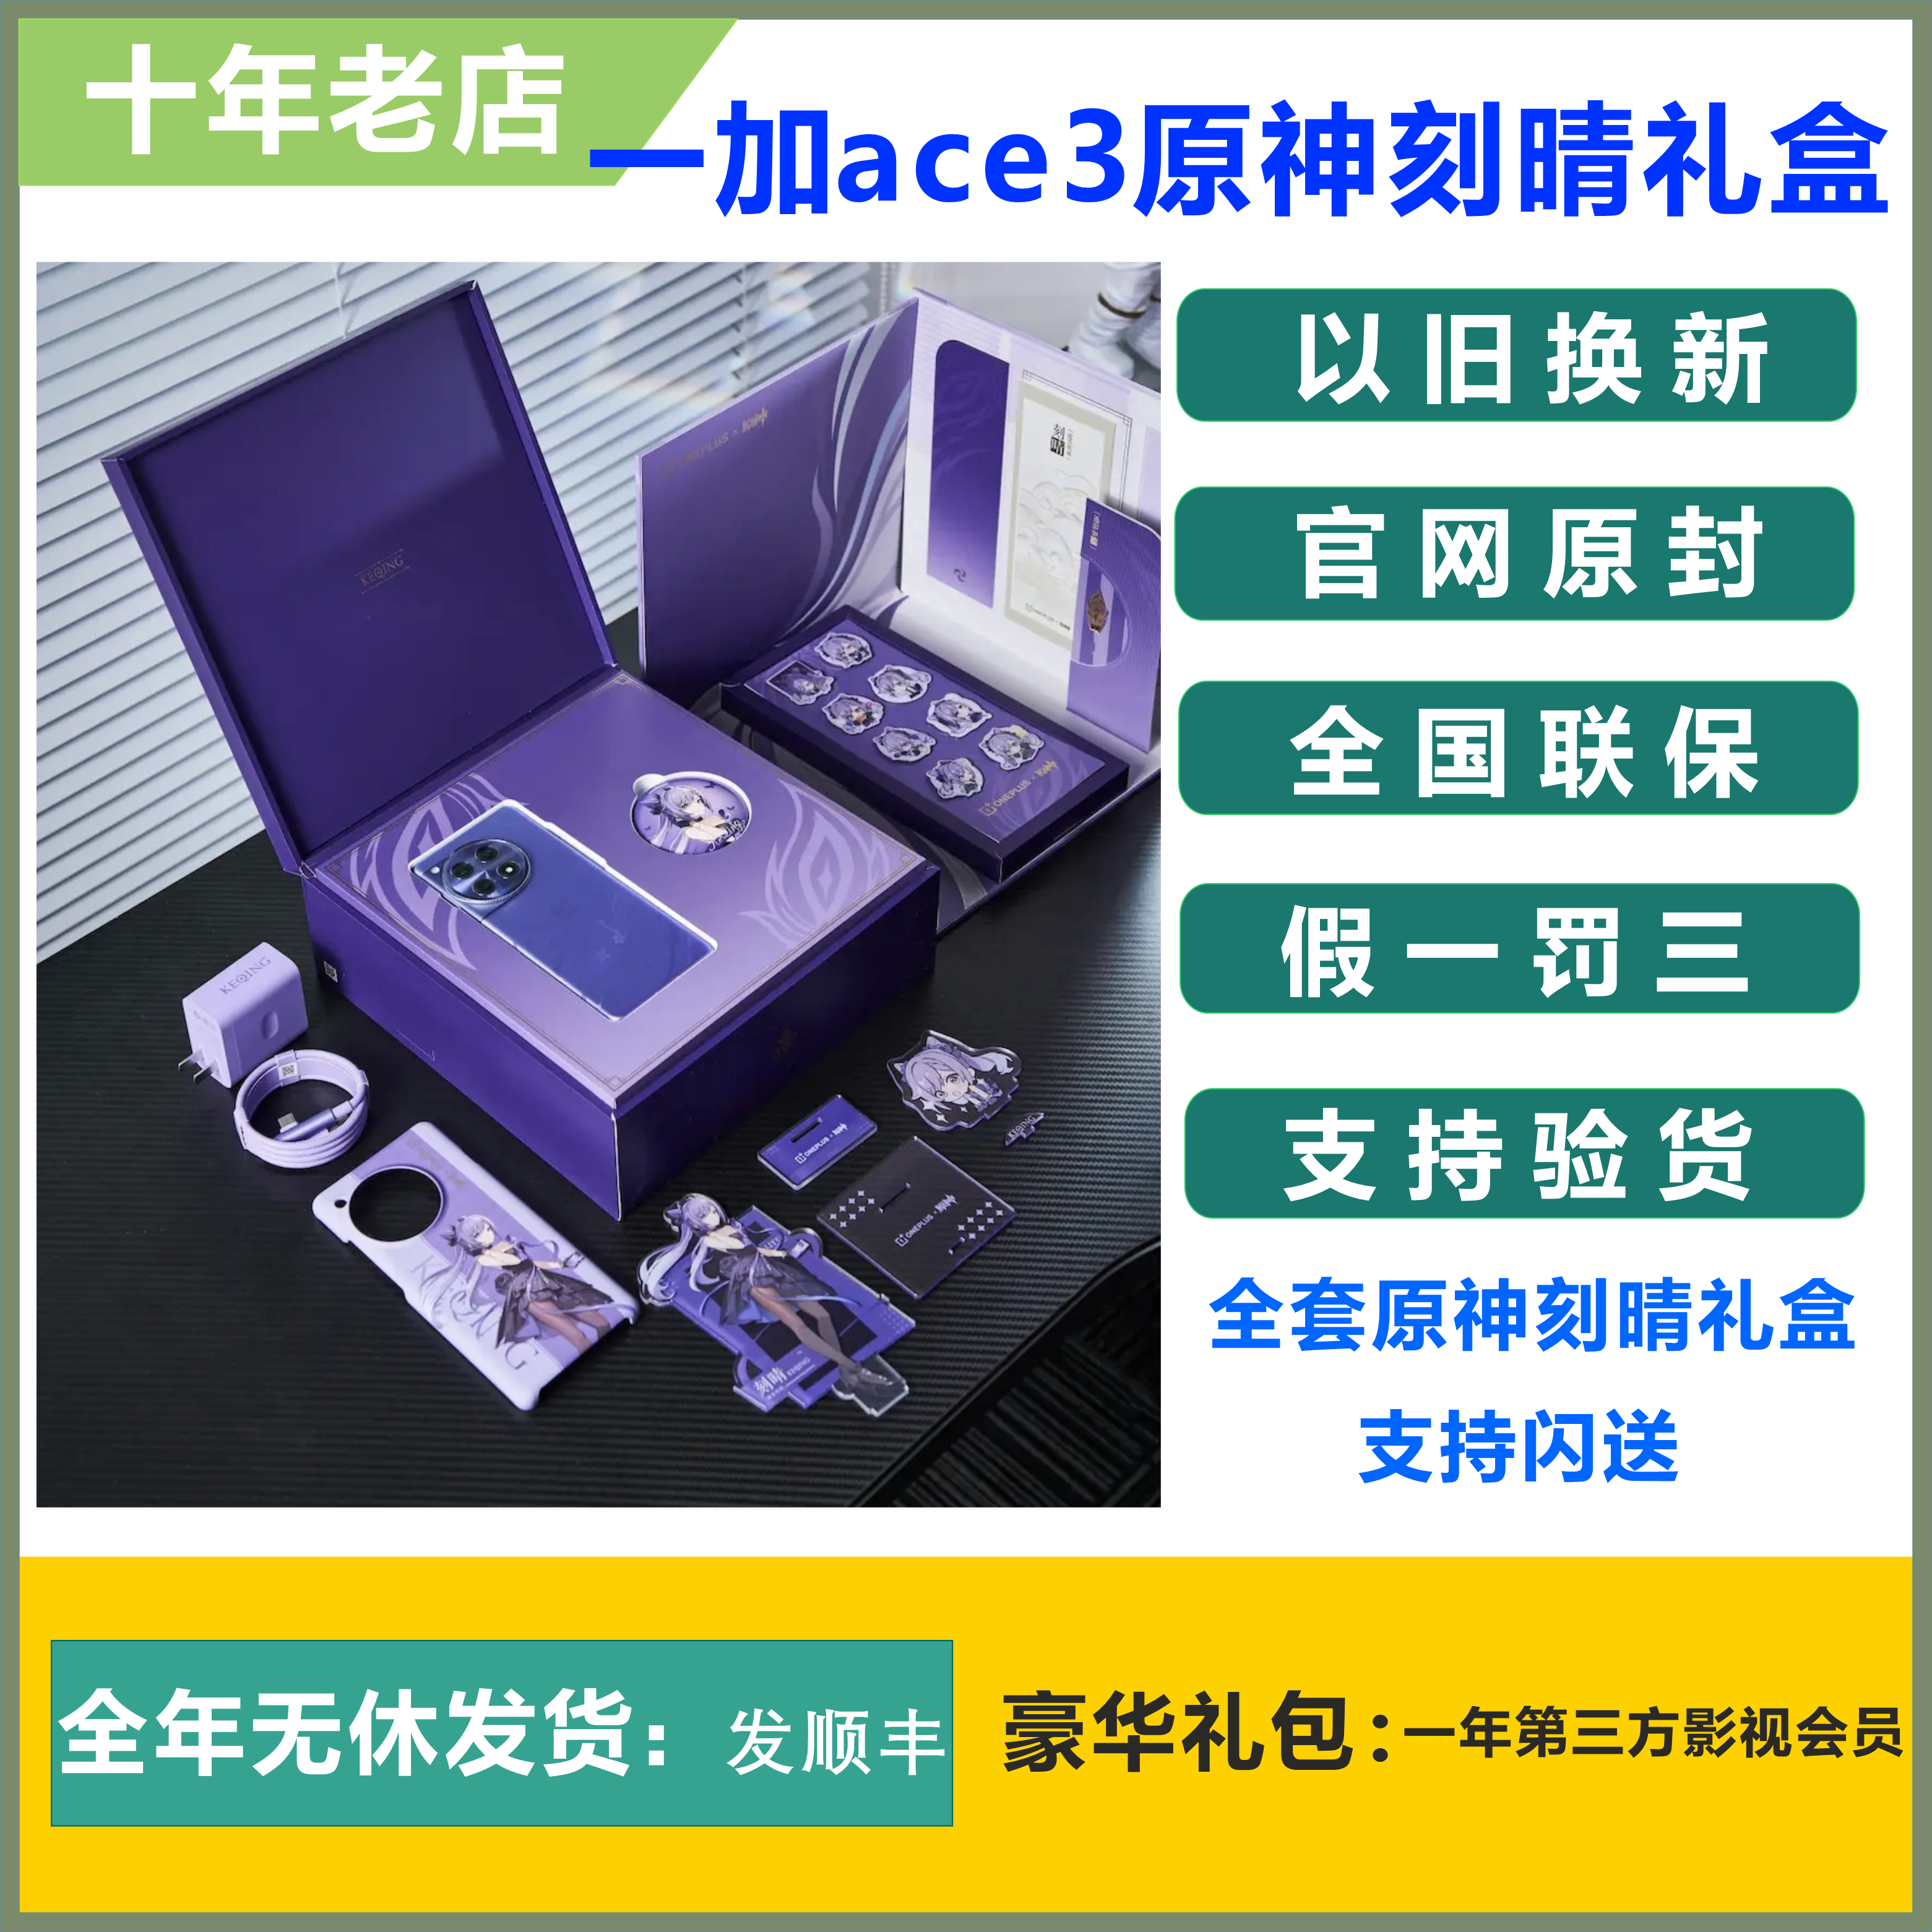 OnePlus/一加 Ace 3 原神刻晴定制手机 刻晴限定礼盒版官方正品5G